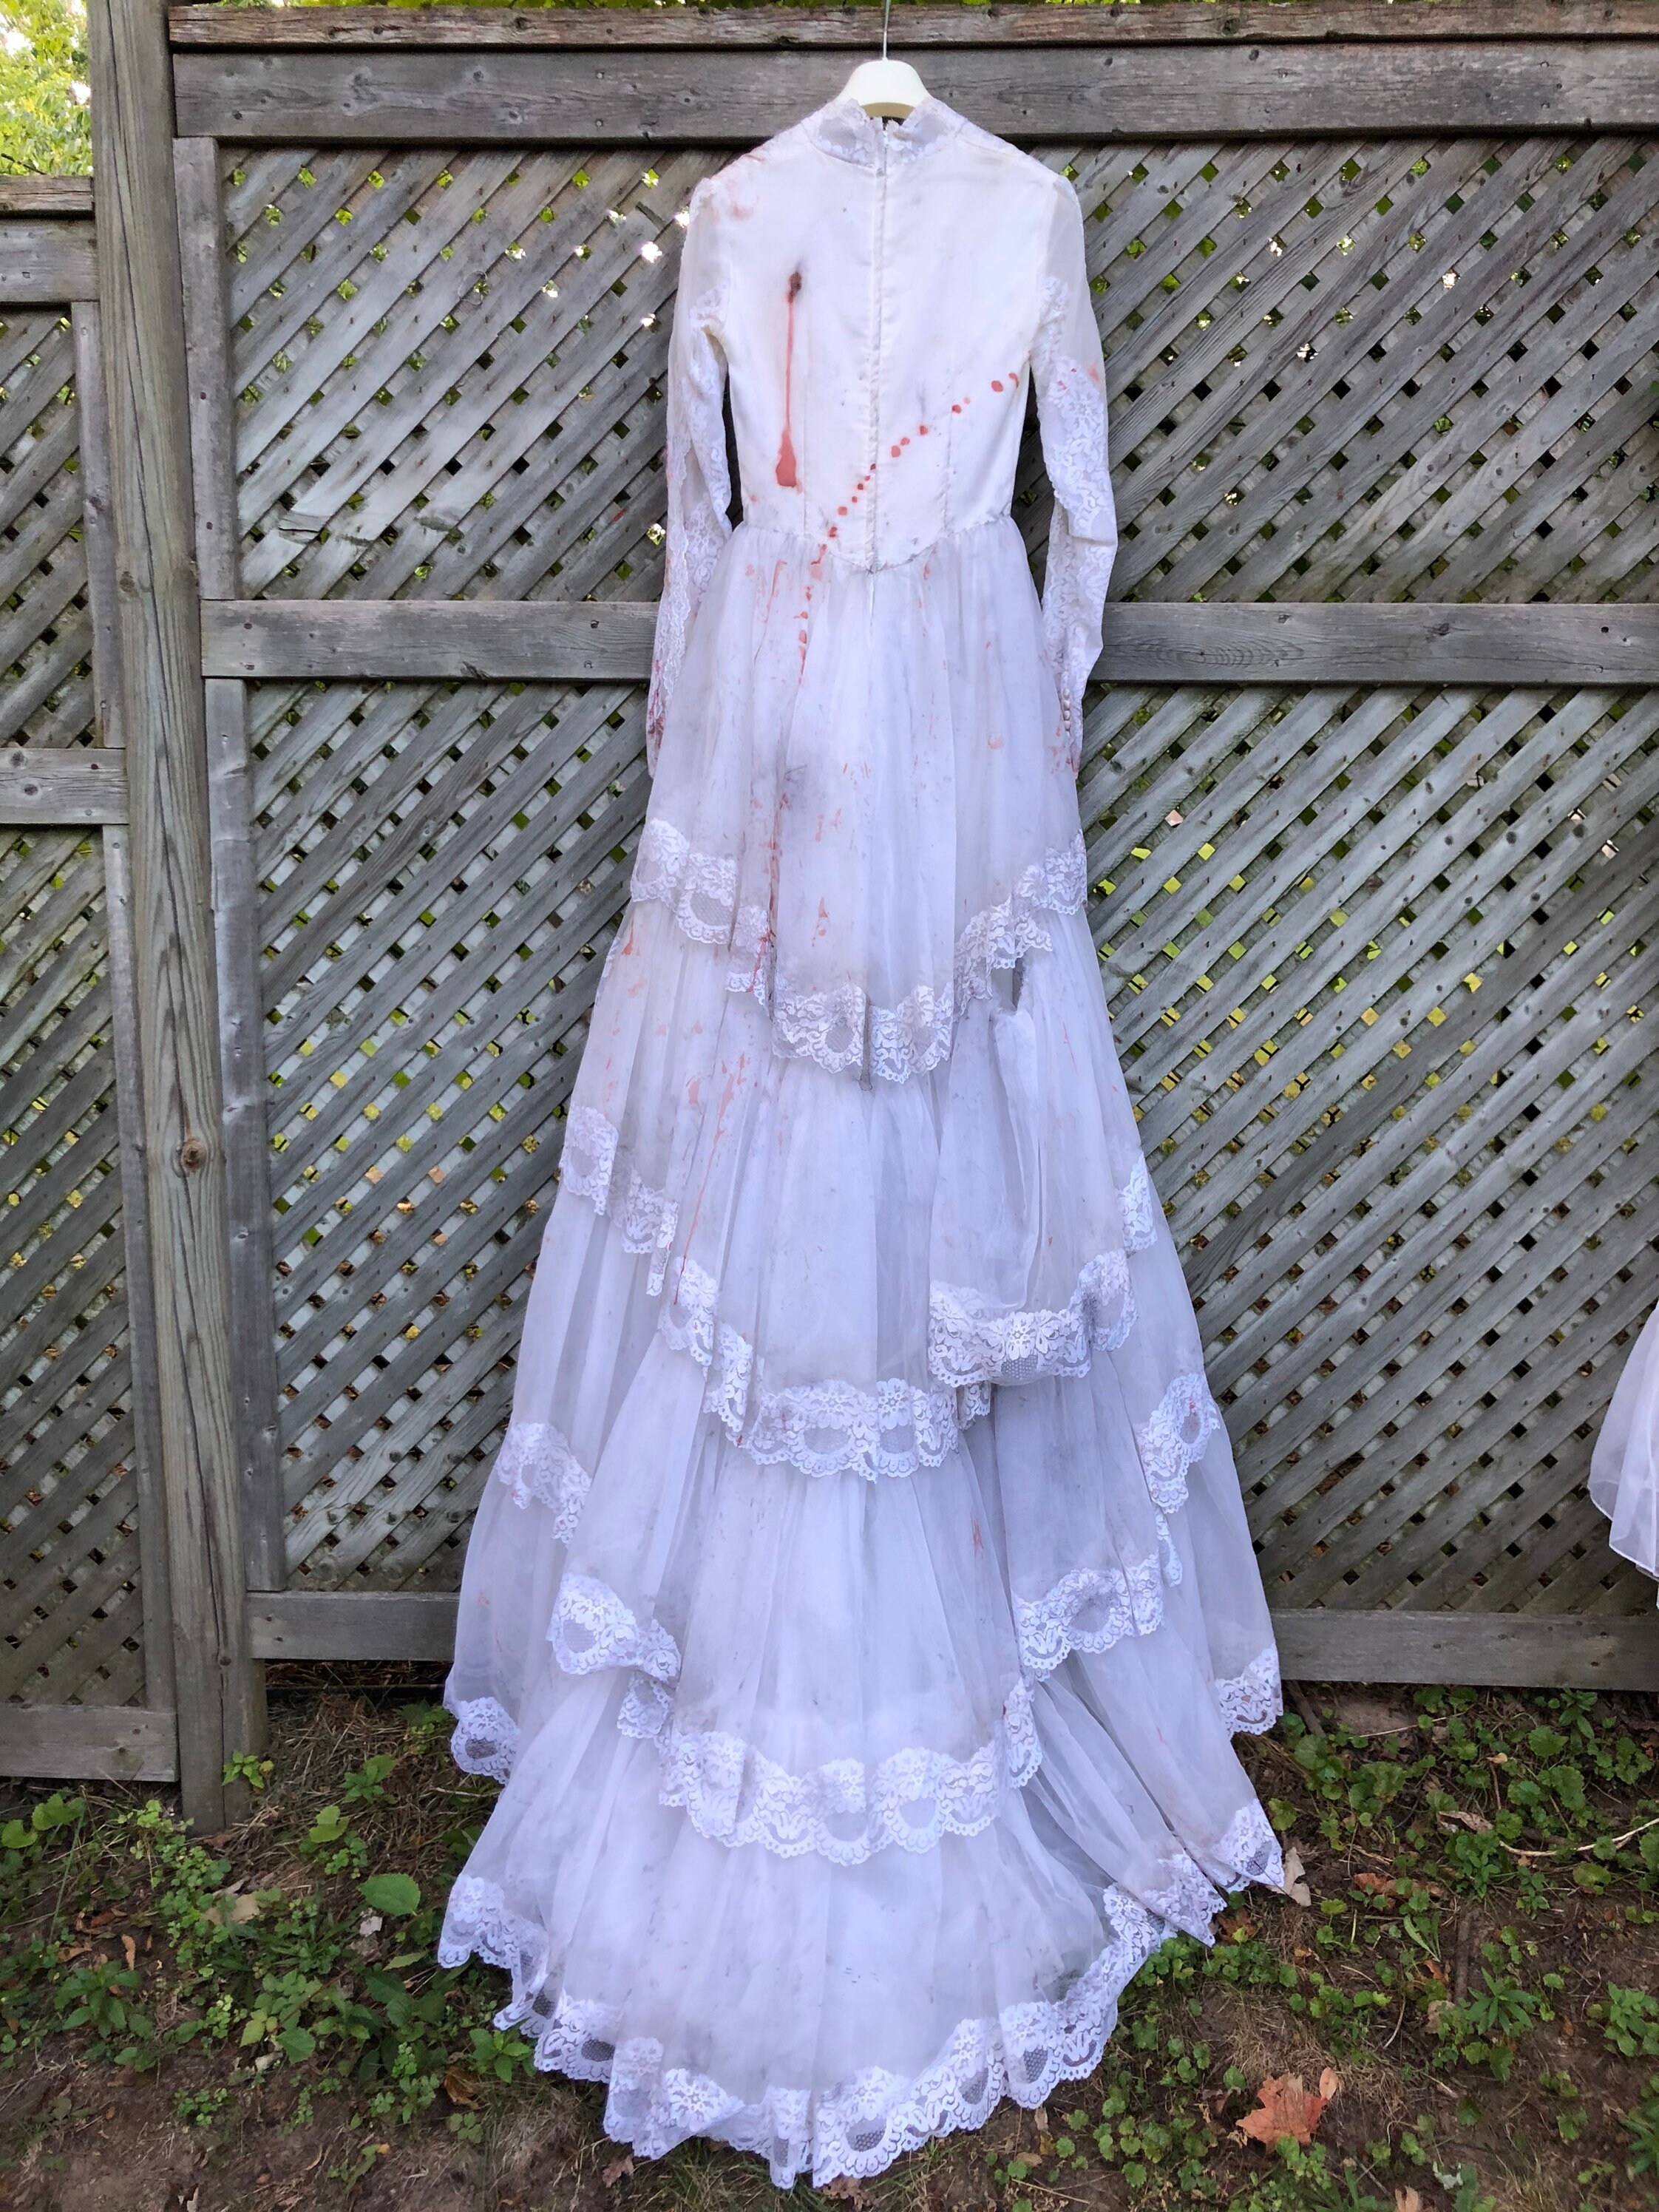 Victorian Bride/Corpse Bride/Zombie Bride/Dead Bride | Etsy